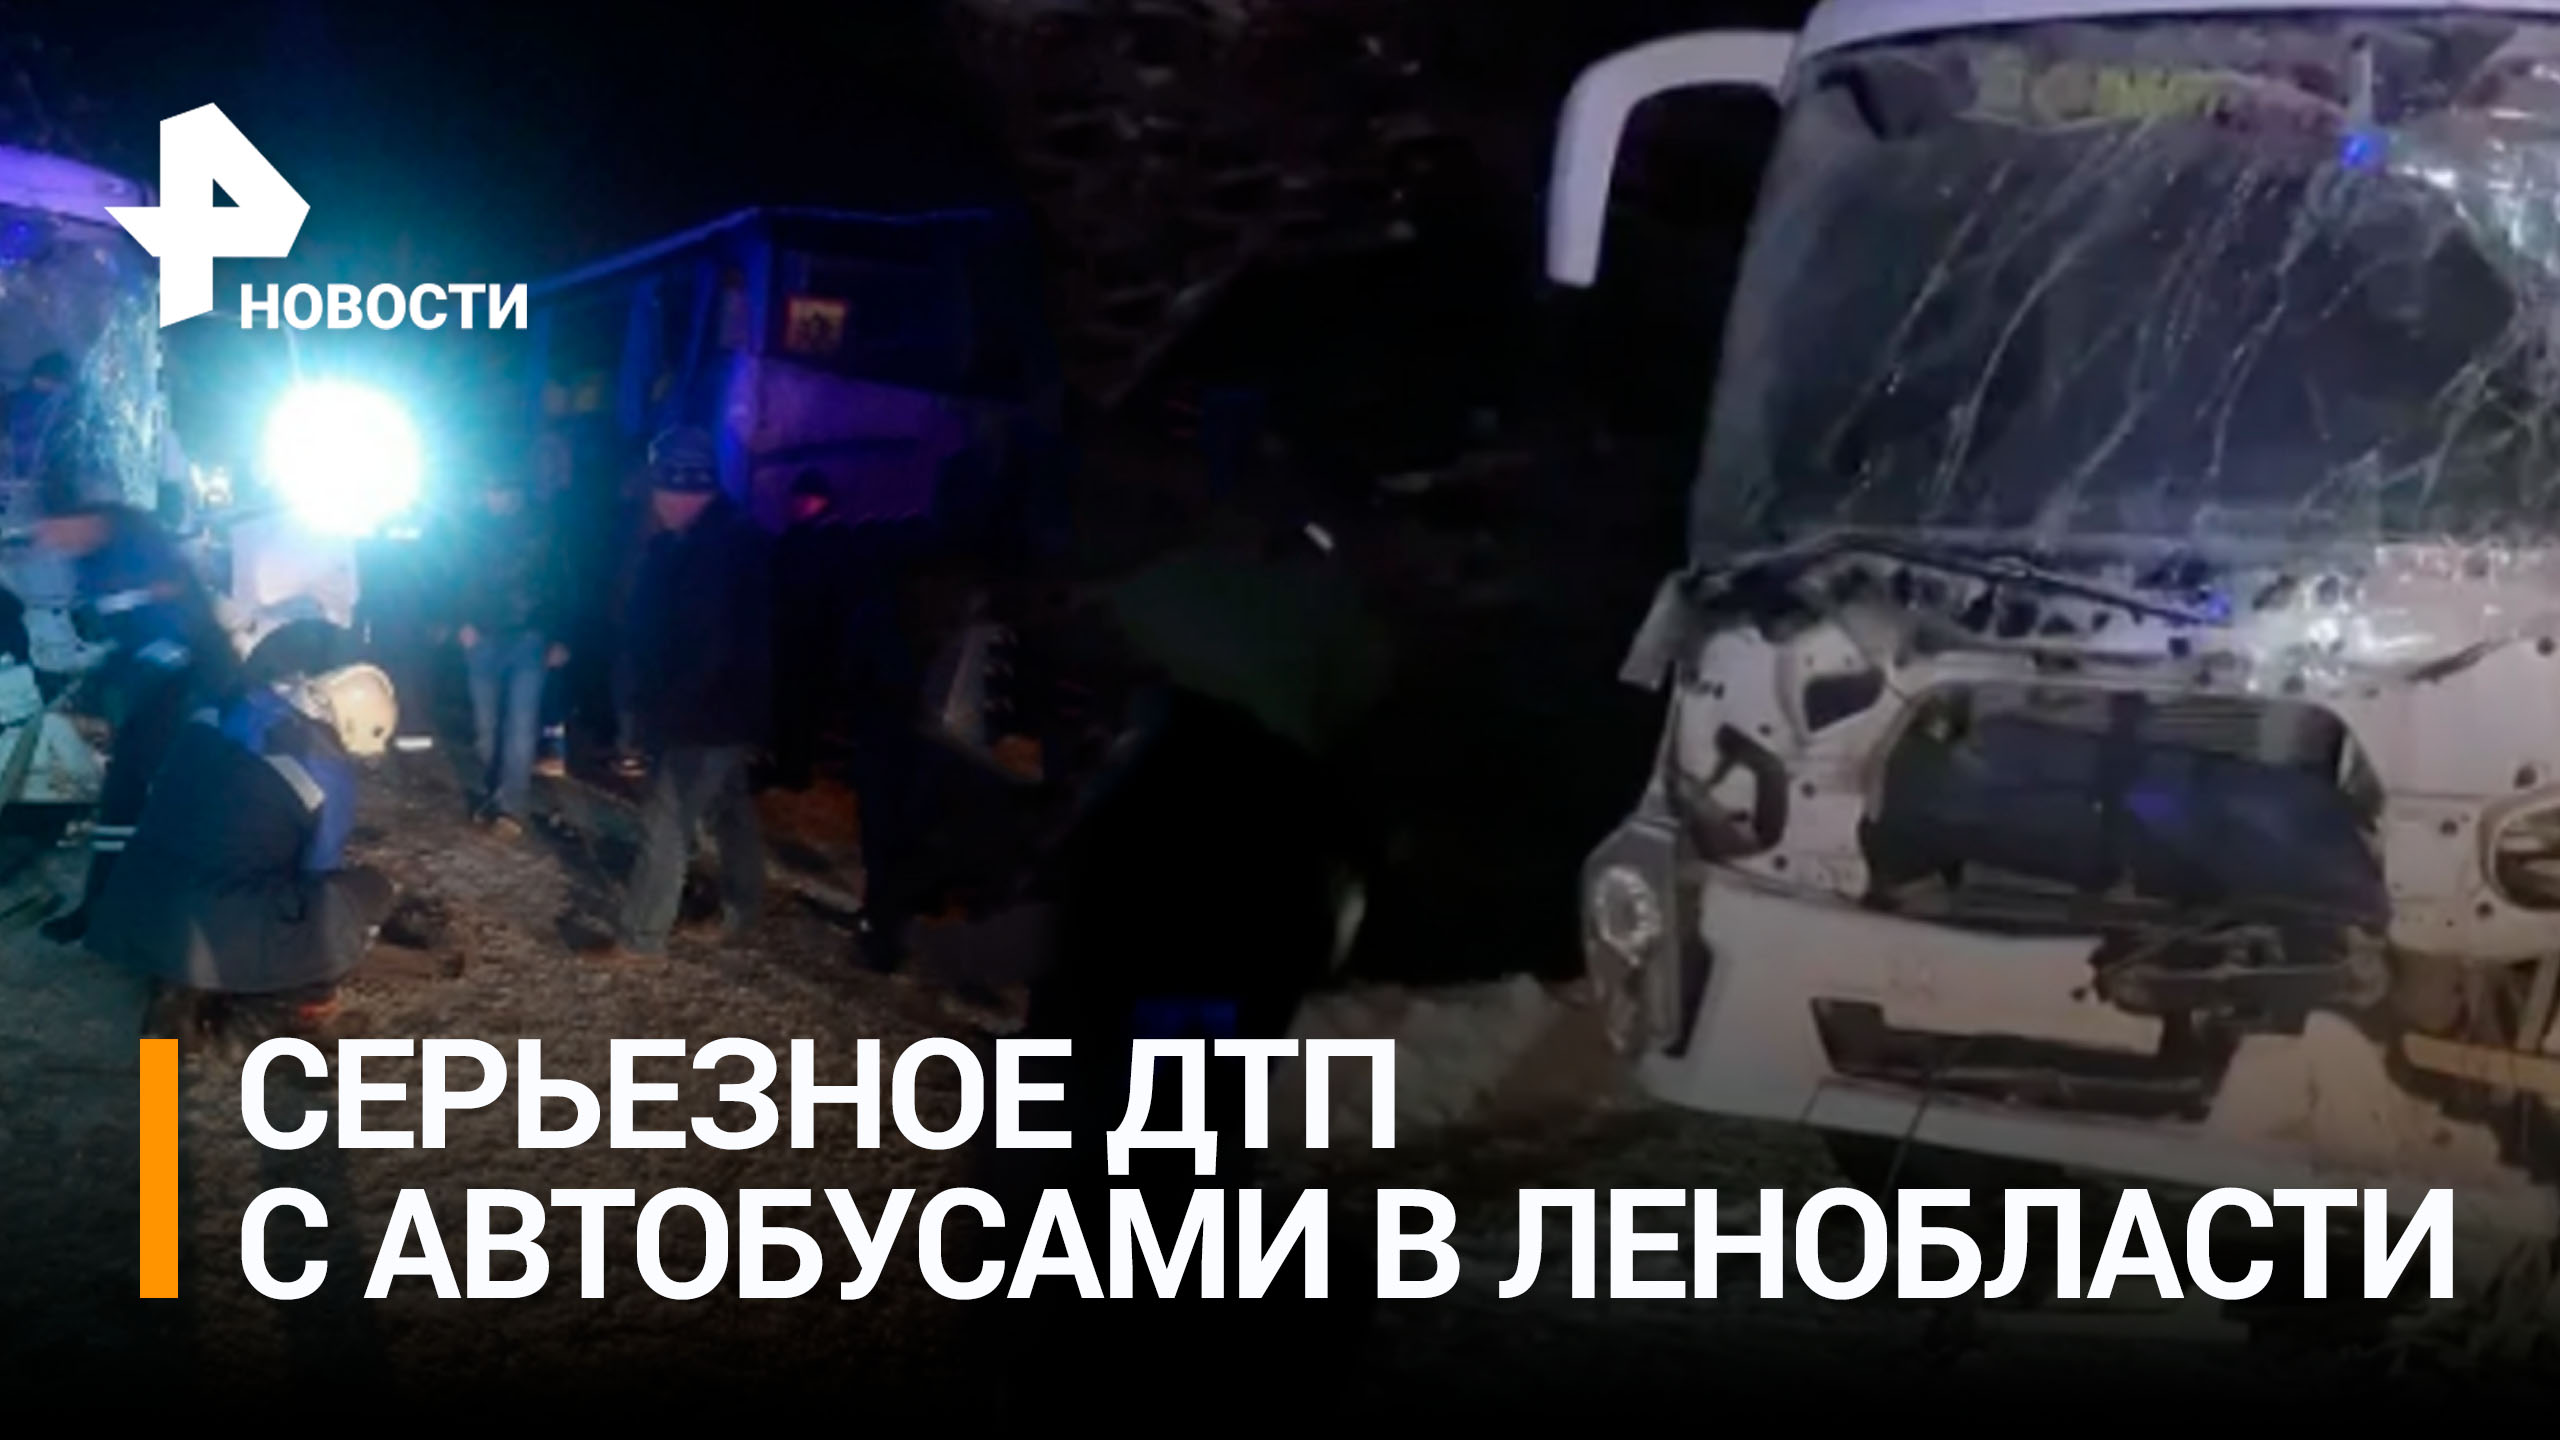 Семь человек пострадали в ДТП с двумя автобусами в Ленобласти / РЕН Новости